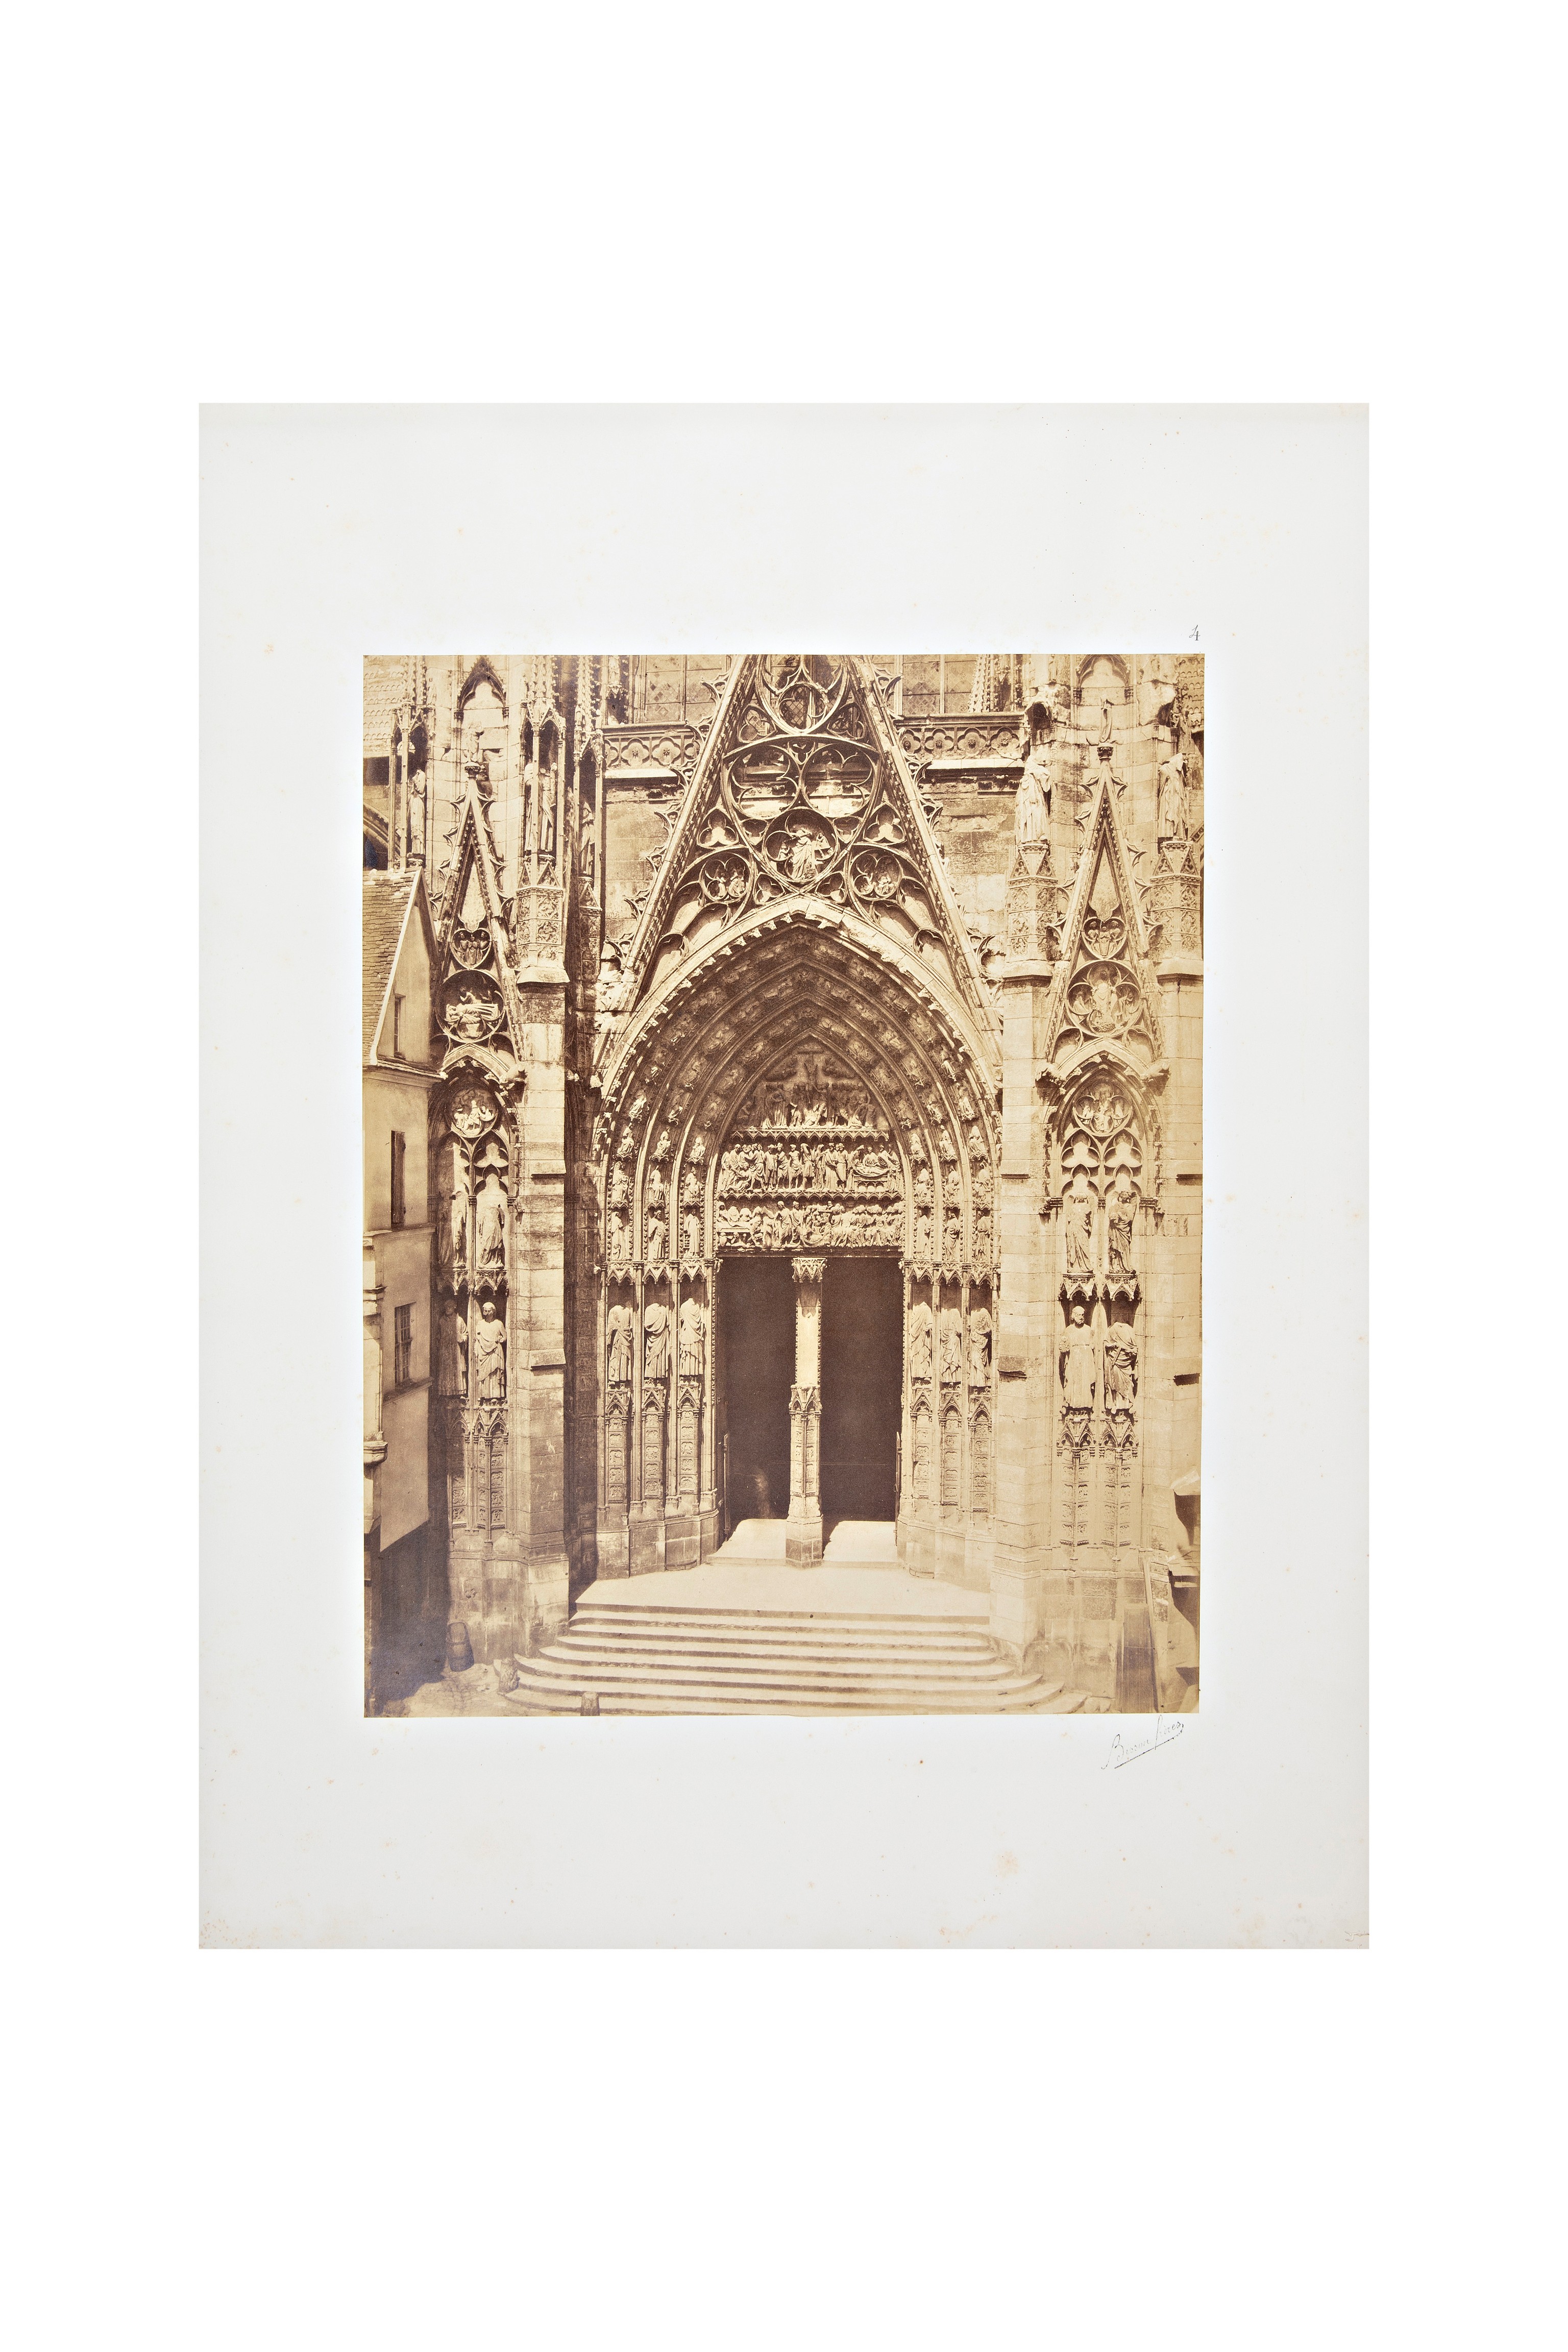 chiese - edifici religiosi - architettura (positivo) di Frères Bisson (metà XIX)